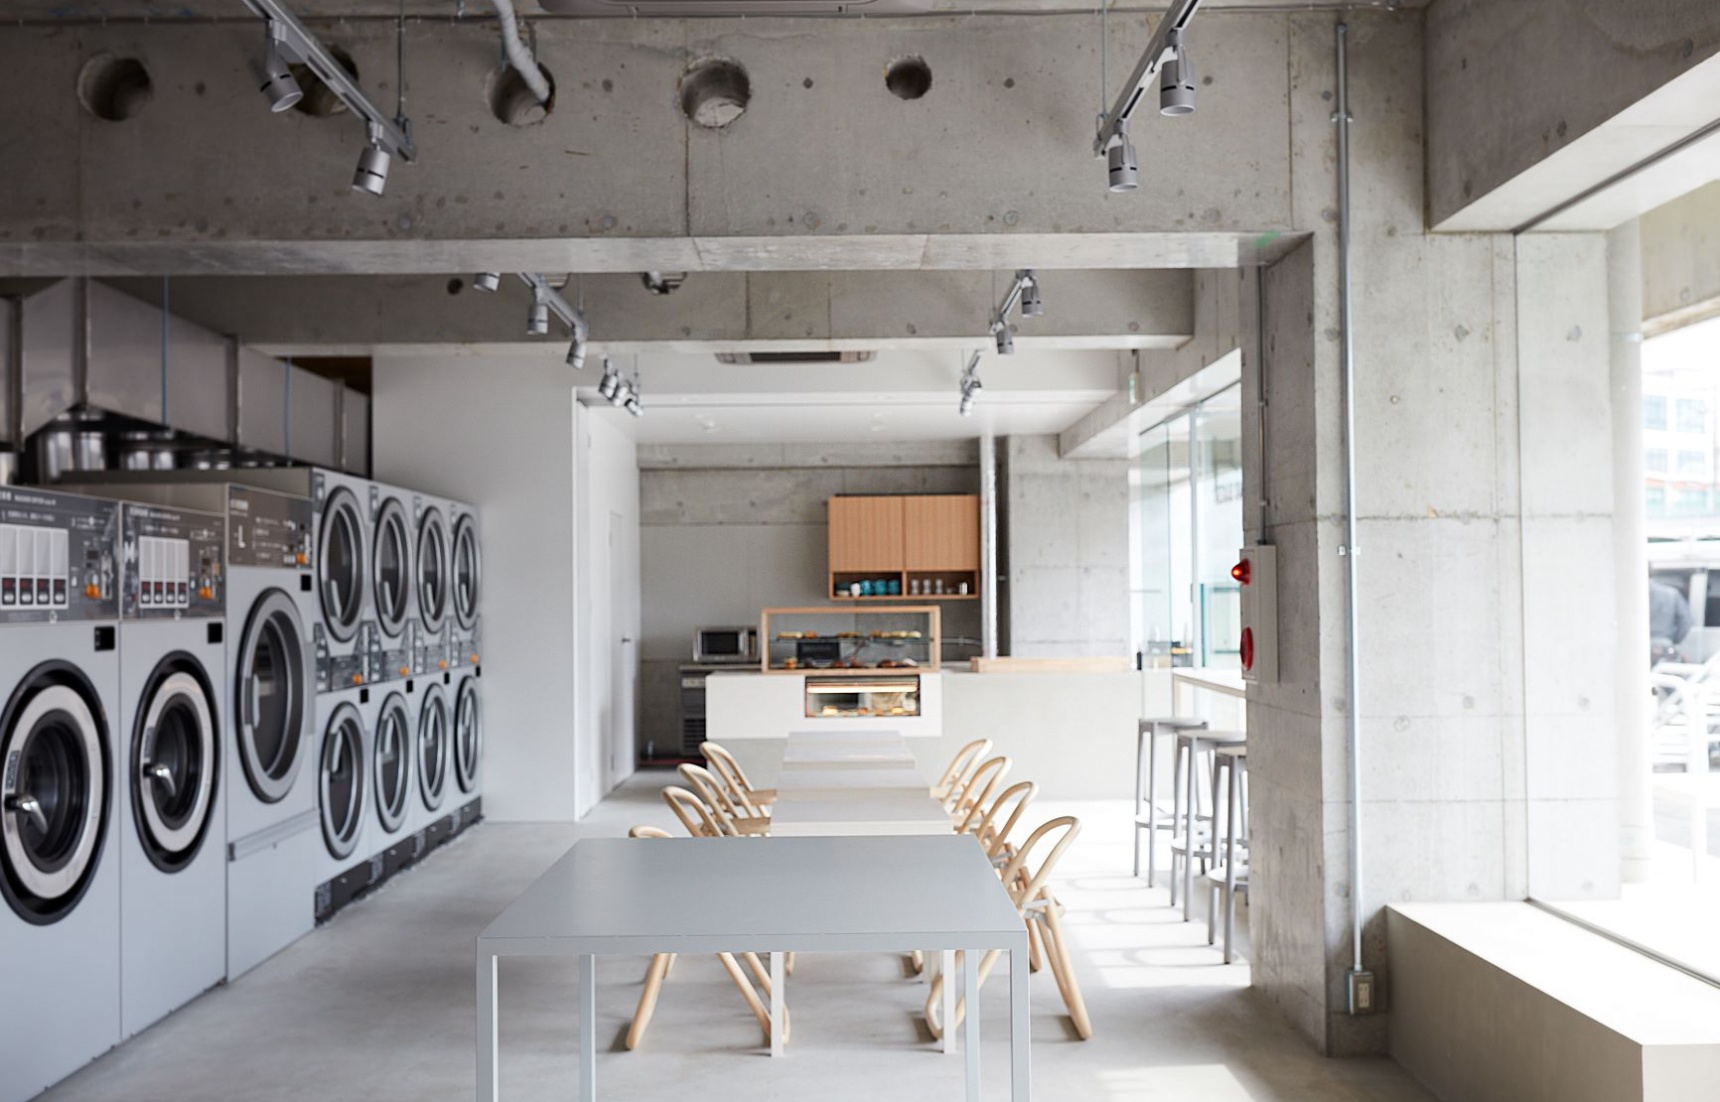 【日本觀察】日本自助洗衣店為何如其多？複合式洗衣店的誕生讓在日生活更加便利